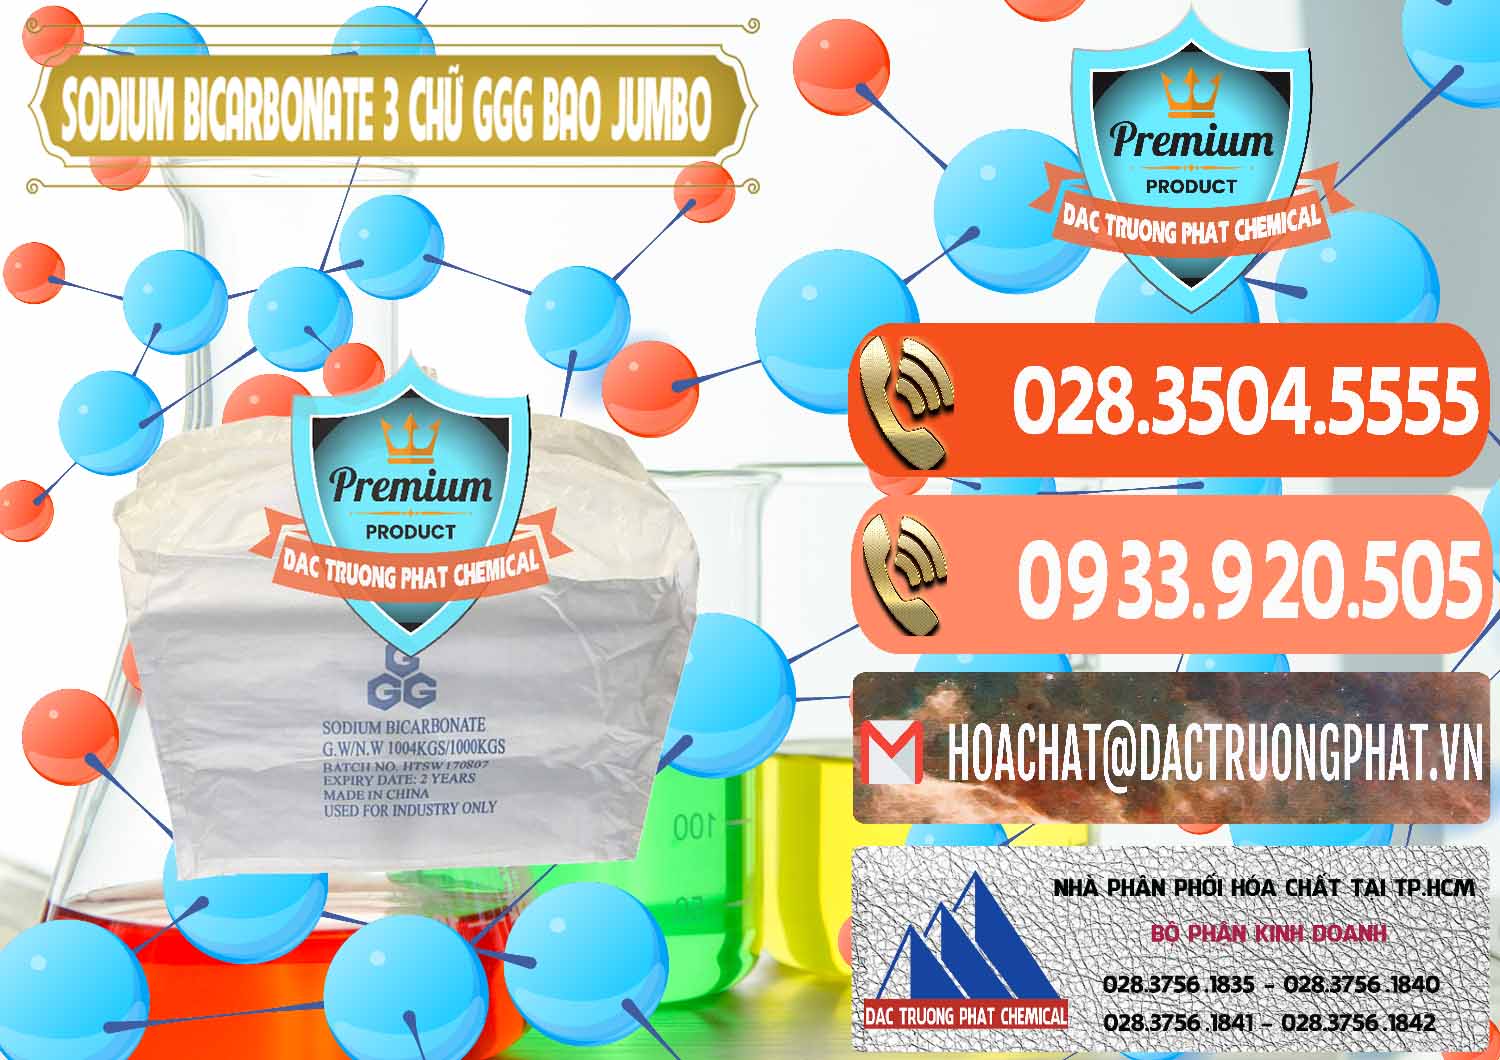 Cung ứng - bán Sodium Bicarbonate – Bicar NaHCO3 Food Grade 3 Chữ GGG Bao Jumbo ( Bành ) Trung Quốc China - 0260 - Nơi chuyên cung cấp & bán hóa chất tại TP.HCM - hoachatmientay.com